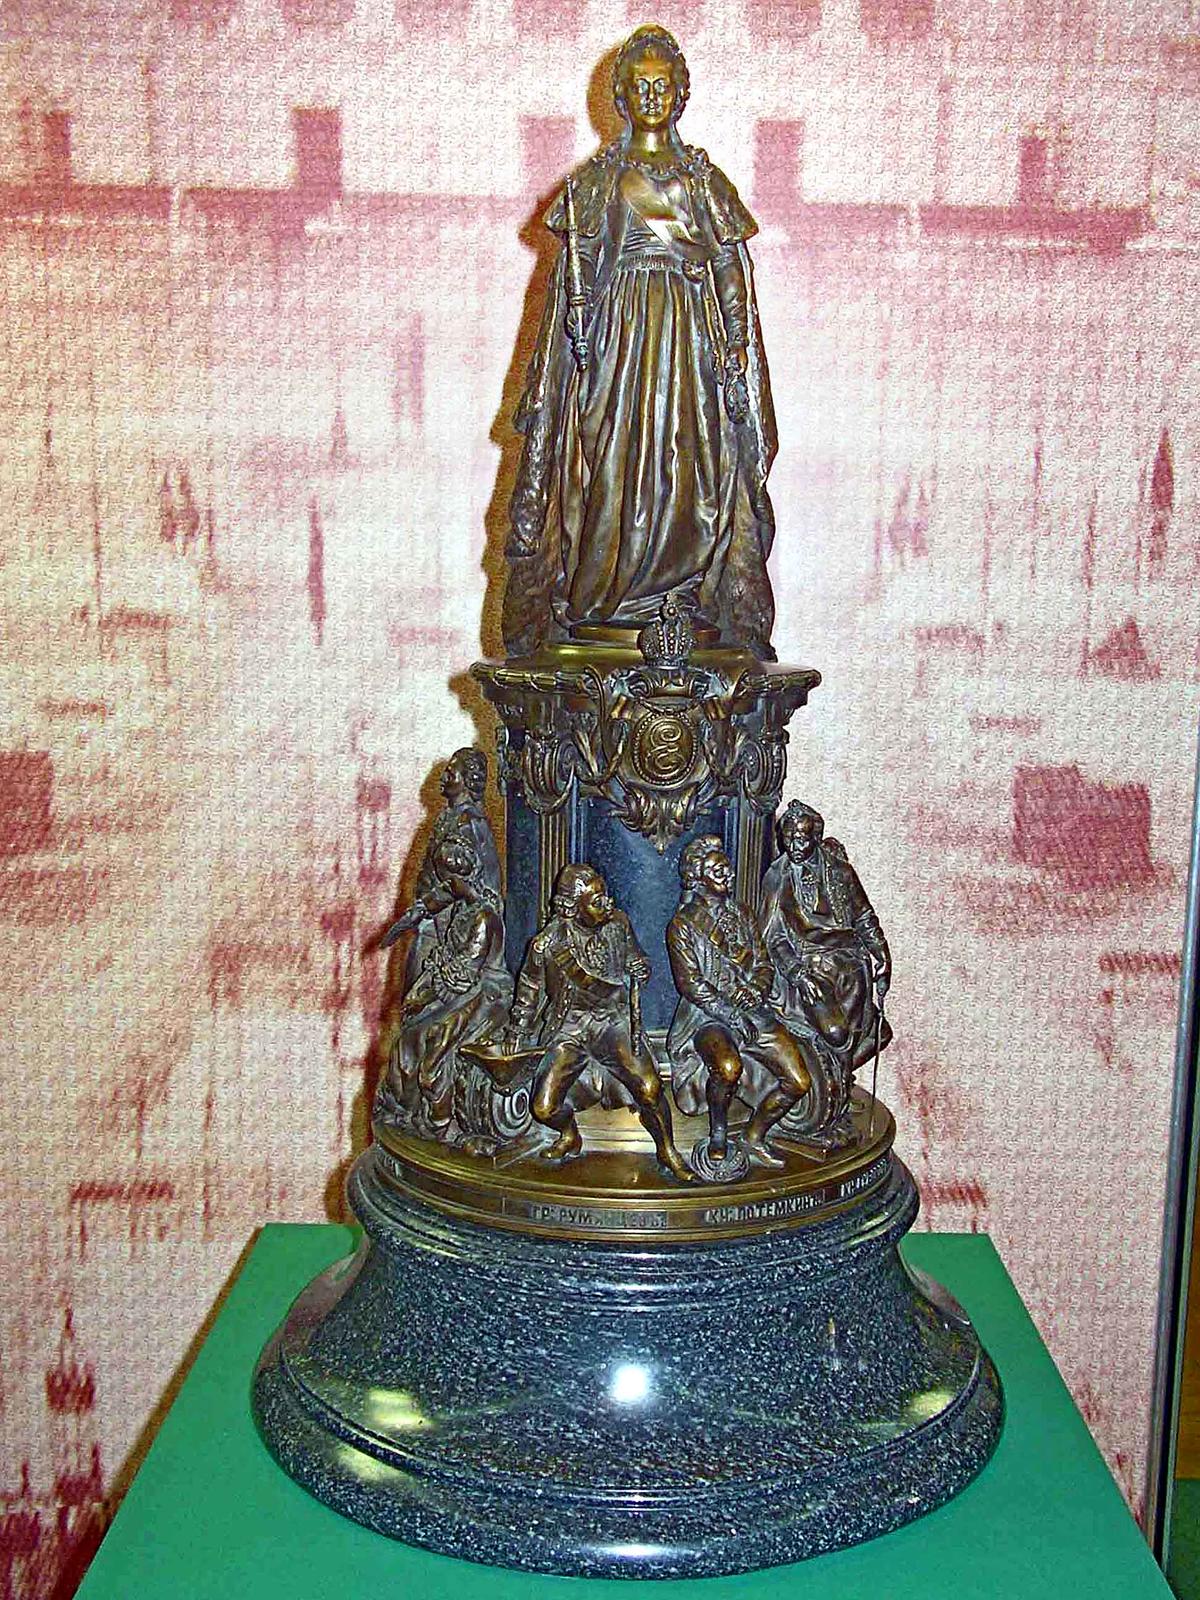 Фото №4349. Модель памятника императрице Екатерине II